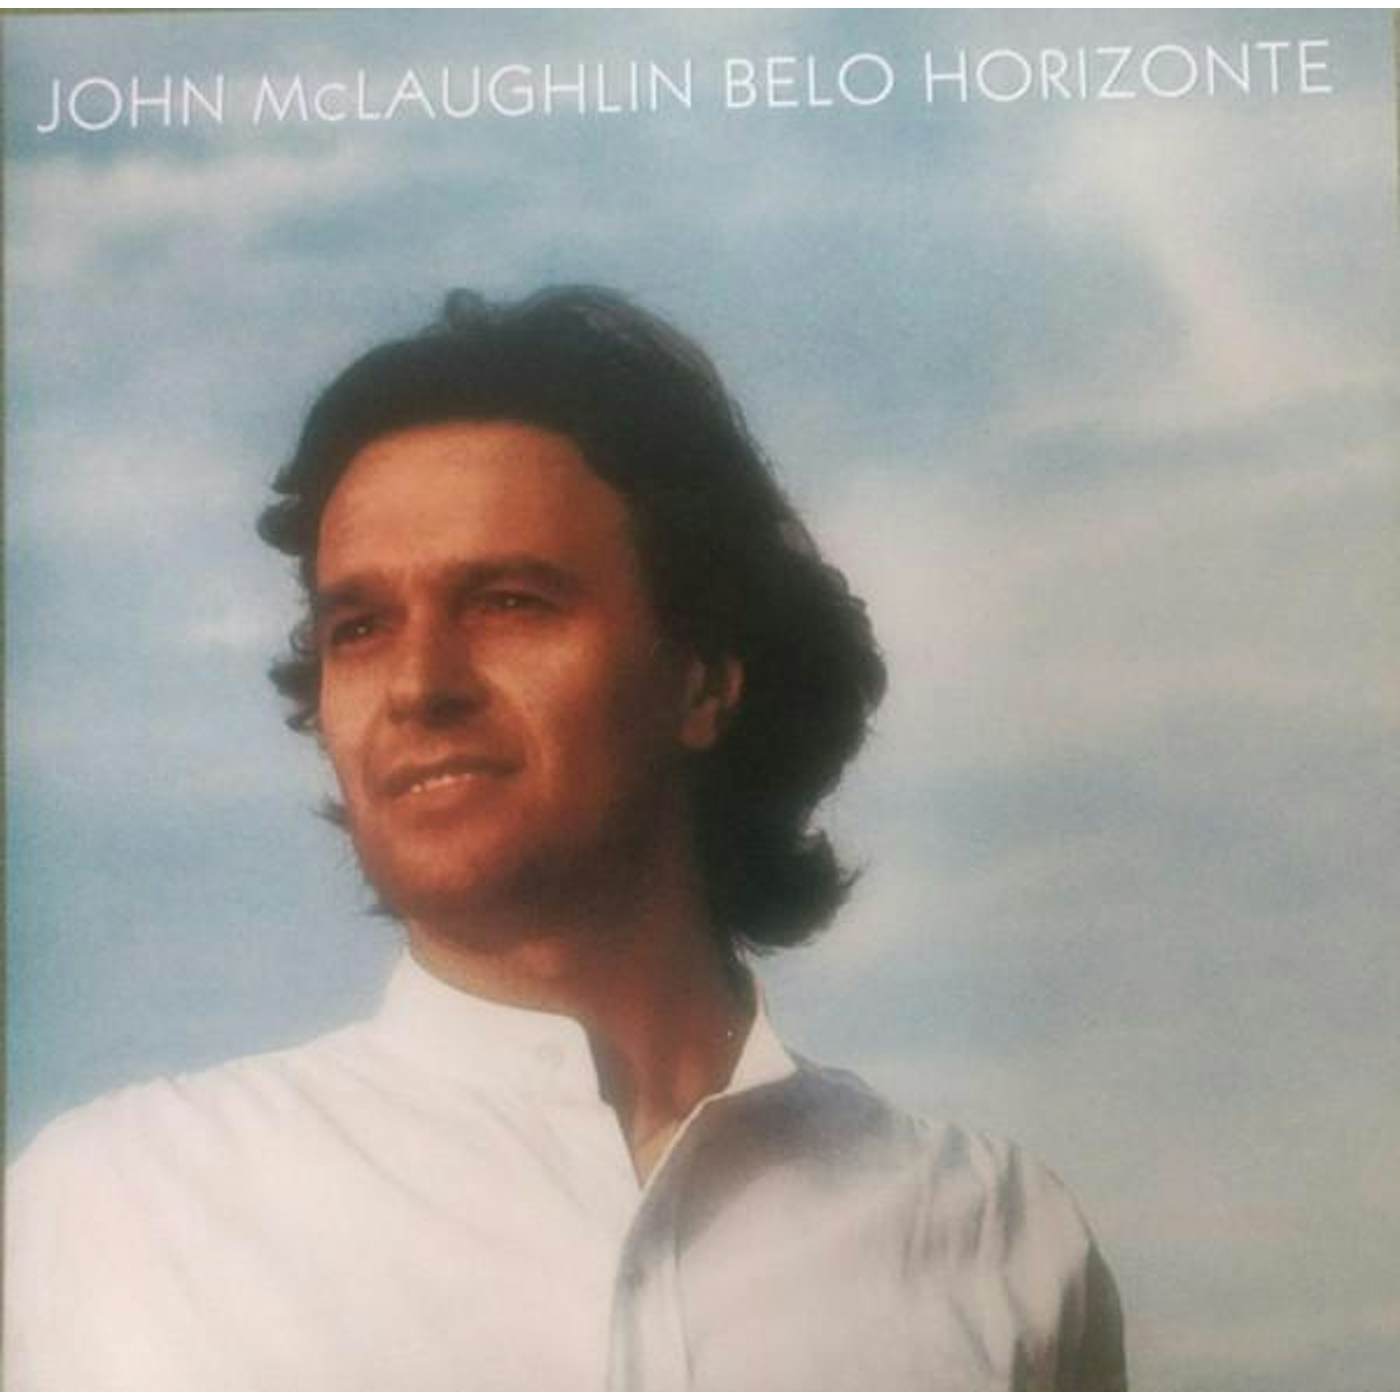 John McLaughlin Belo Horizonte Vinyl Record